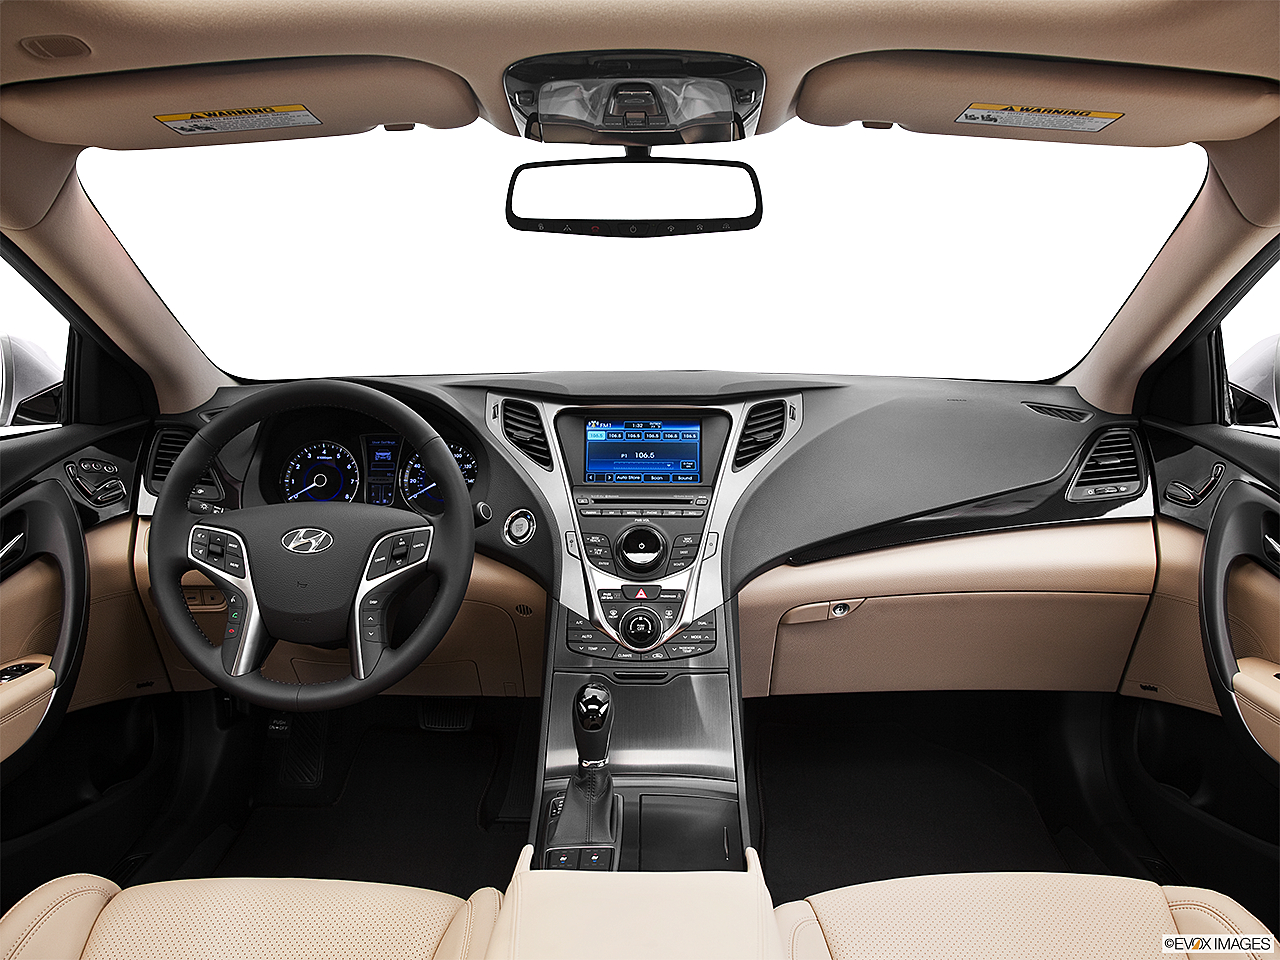 2013 Hyundai Azera 4dr Sedan - Research - GrooveCar